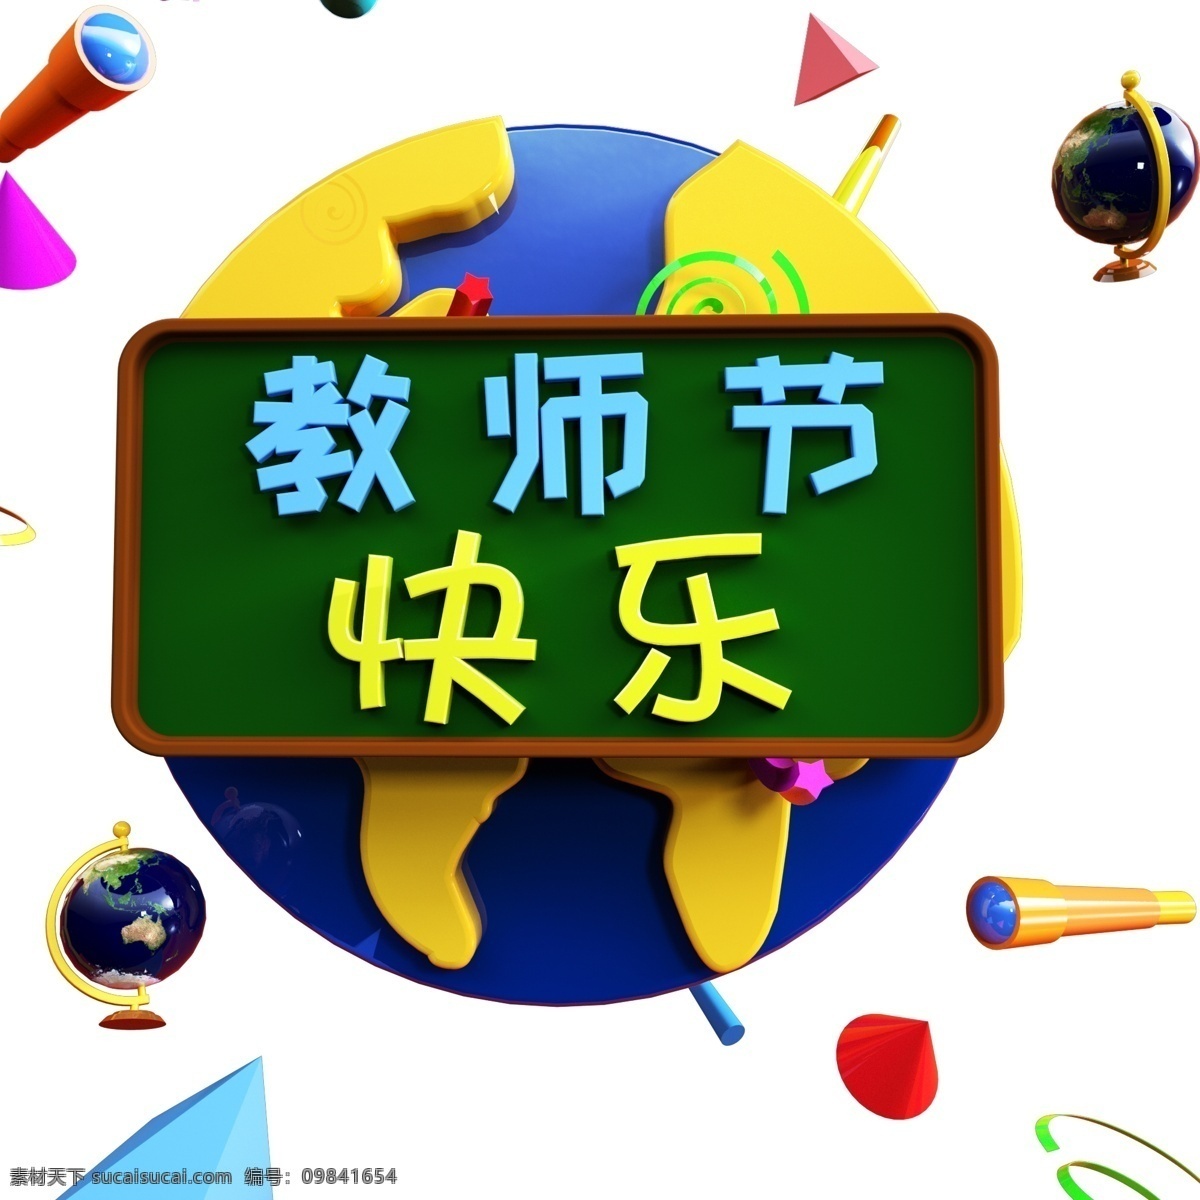 老师 节日 快乐 教师节 3d 艺术 字 立体字 设计素材 宣传 元素 老师节日快乐 艺术字